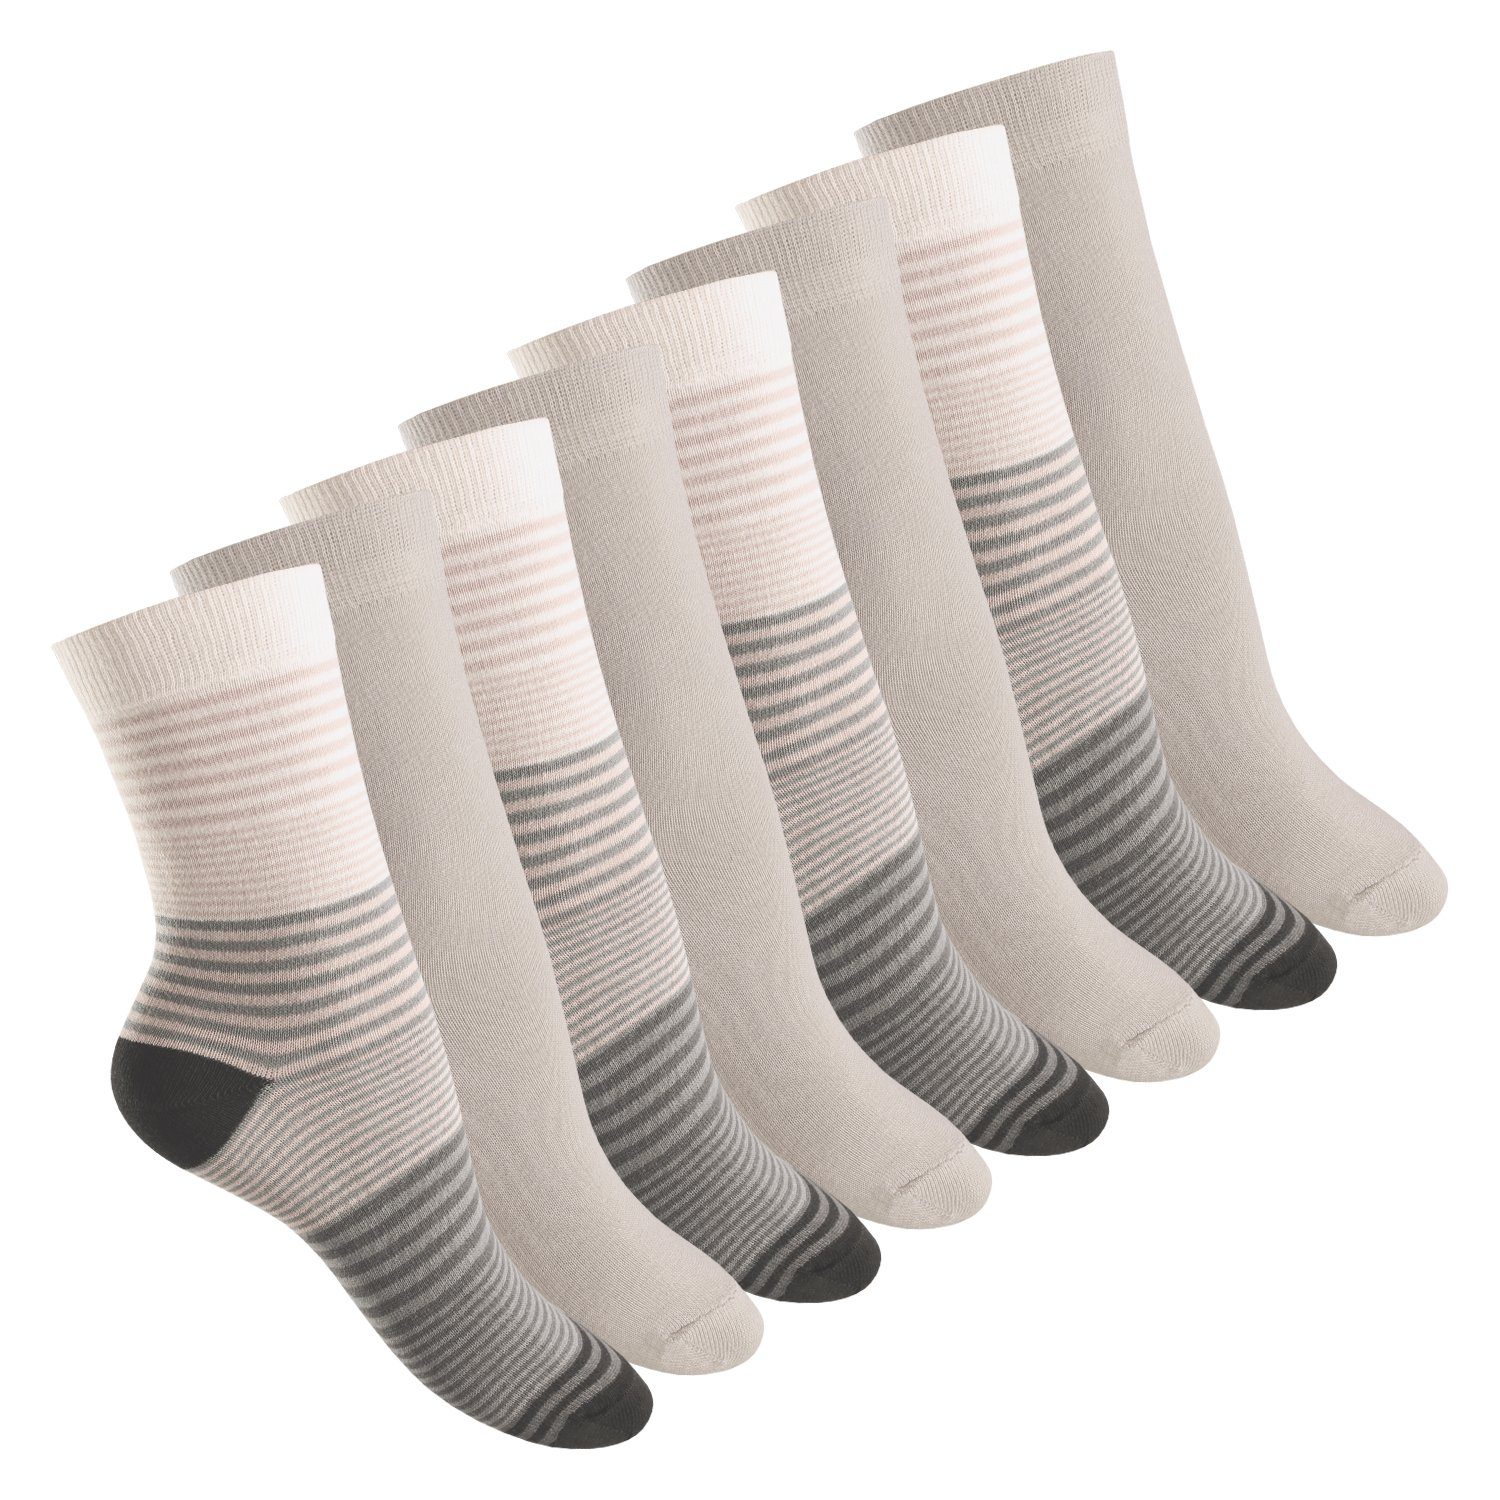 celodoro Basicsocken Damen Socken (8 Paar) mit Ringel-/Blockstreifen & Komfortbund Grau